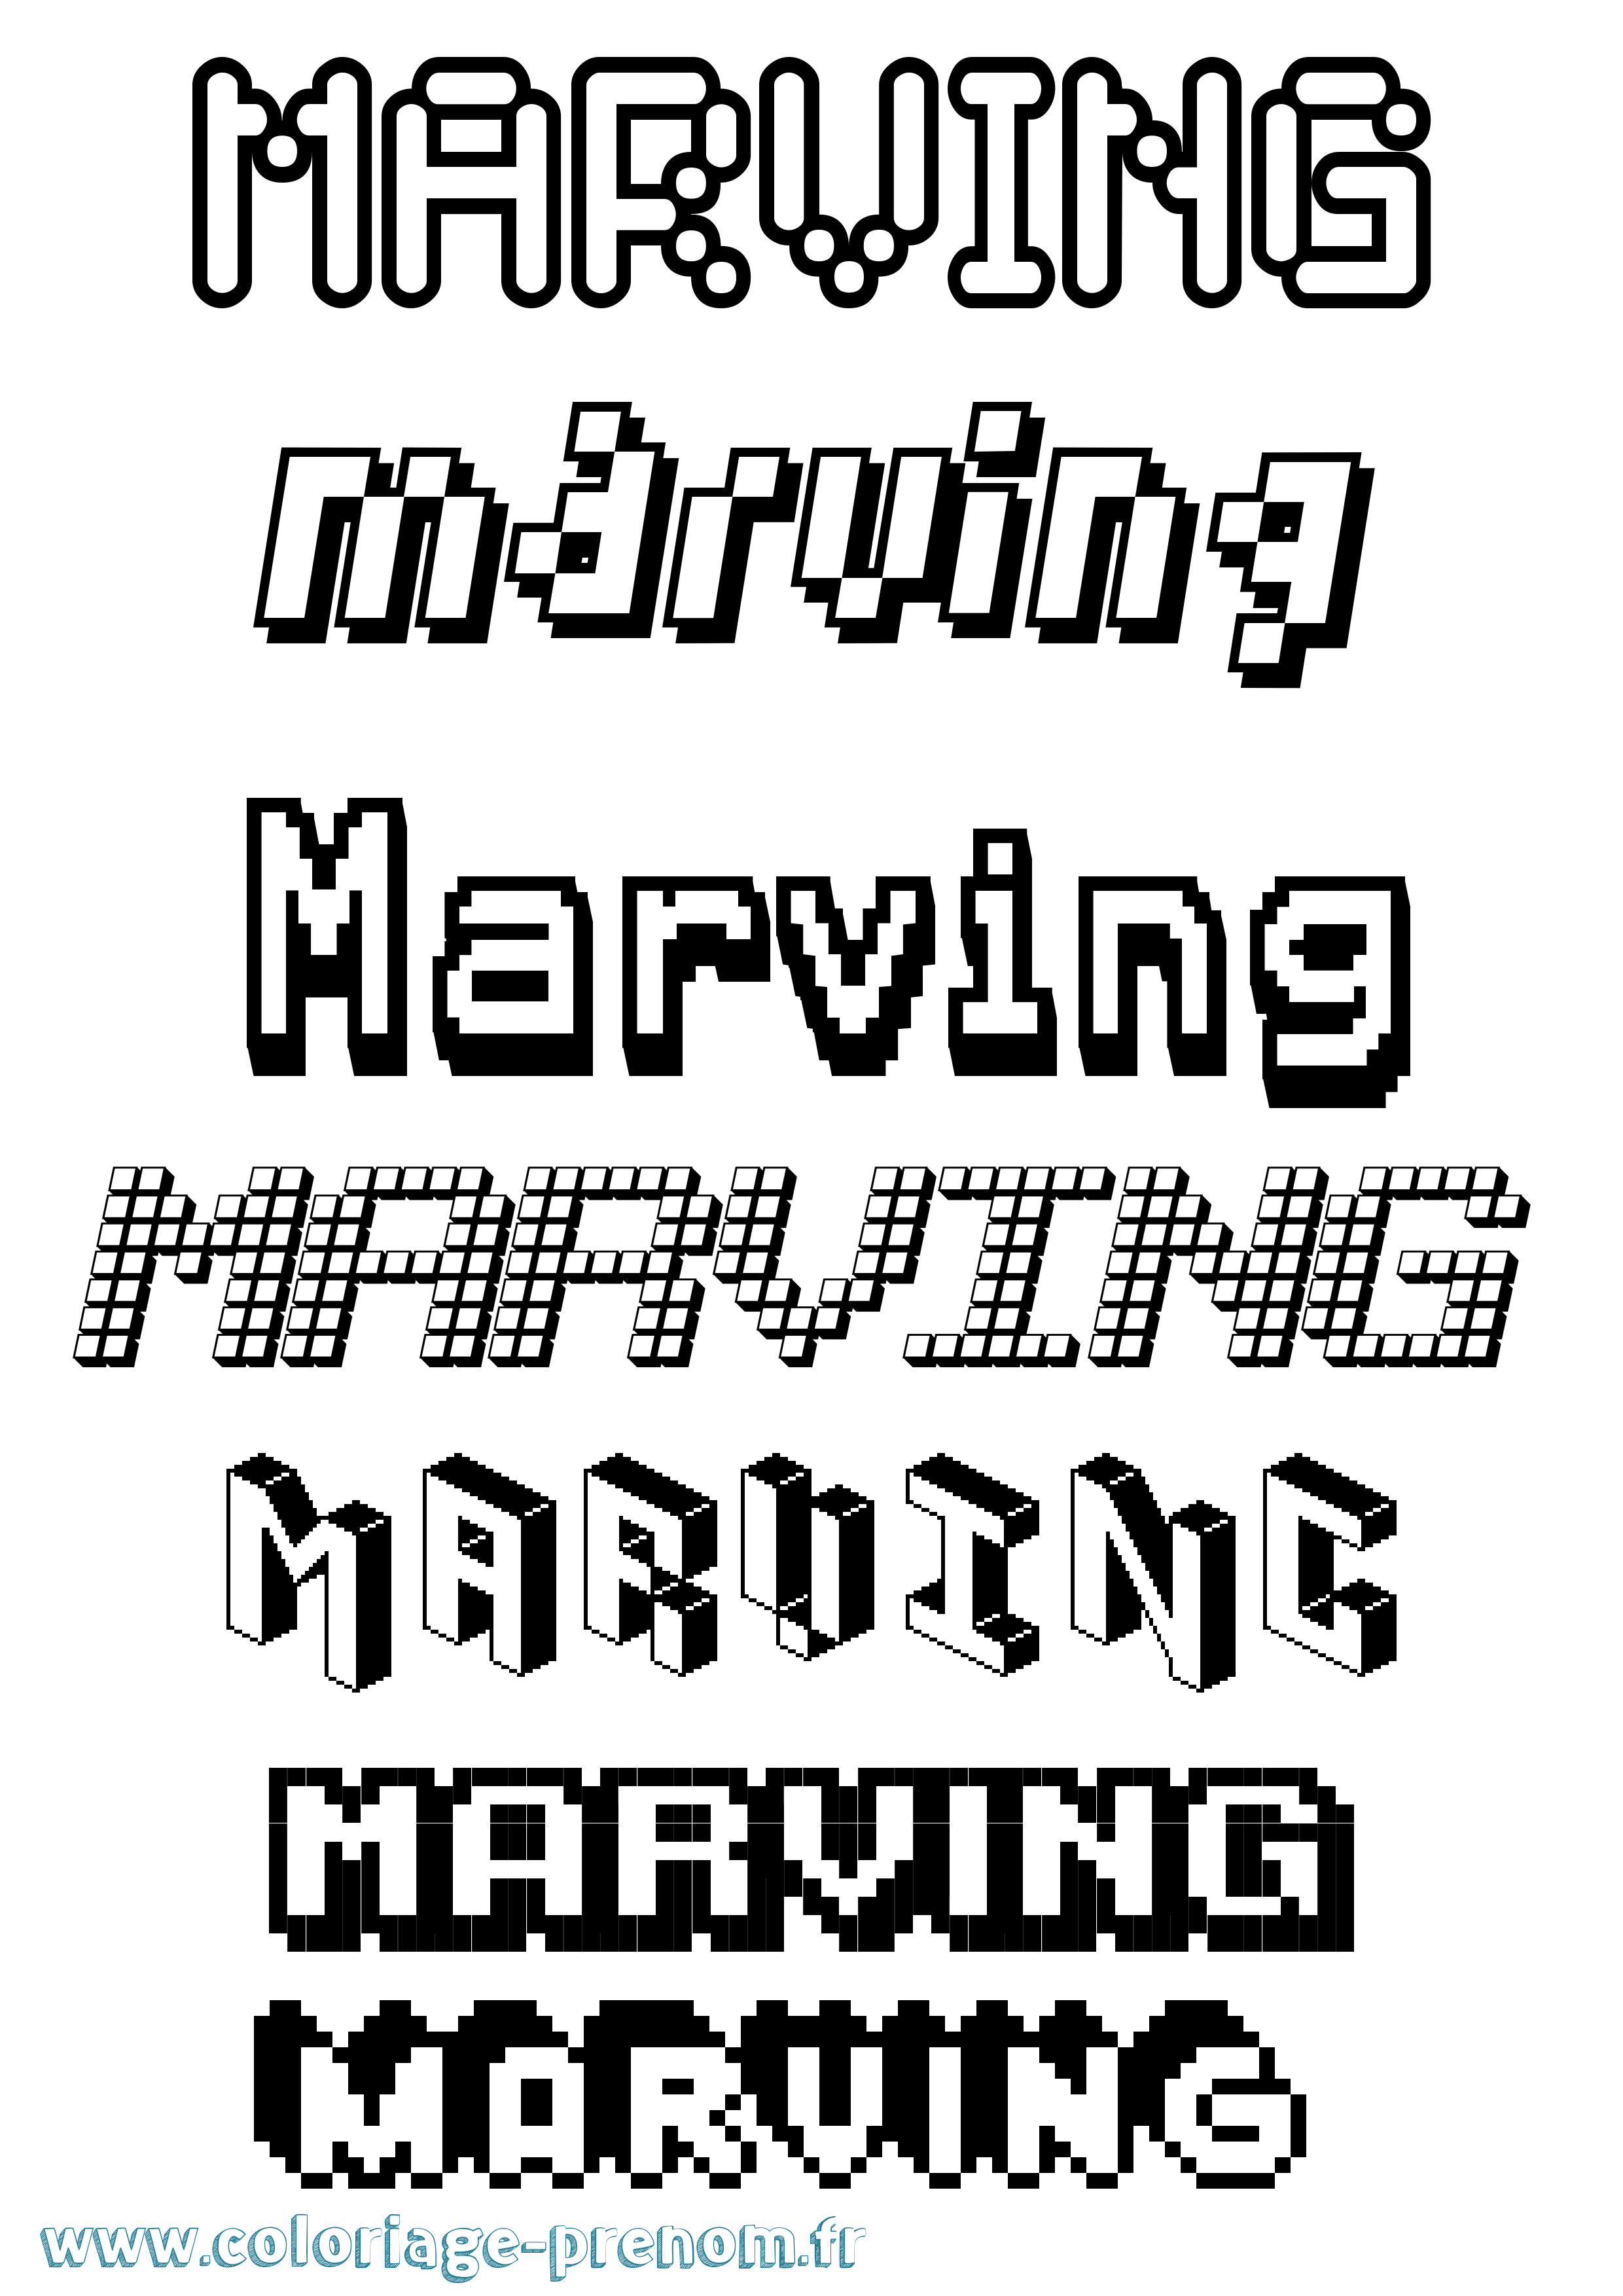 Coloriage prénom Marving Pixel